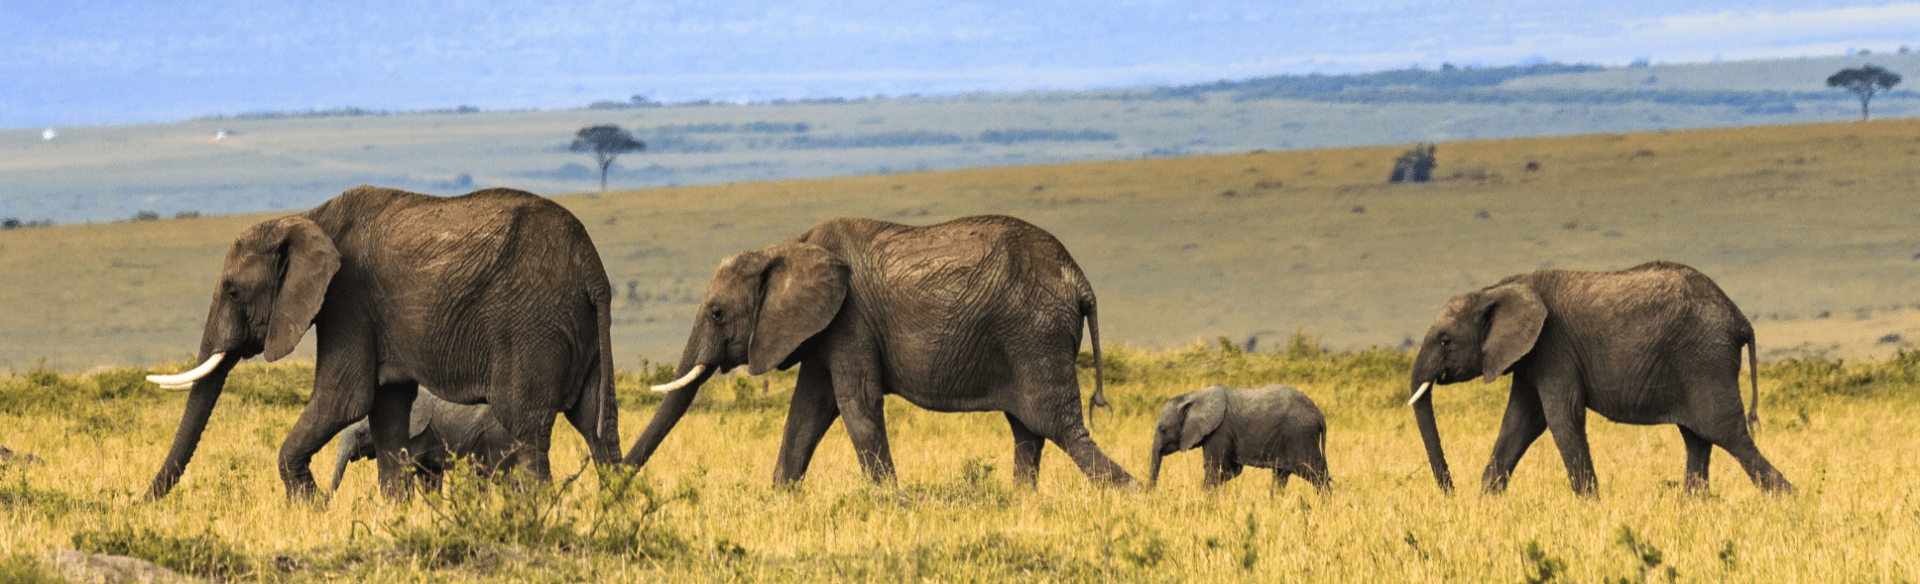 Famille d'éléphants à la file indienne